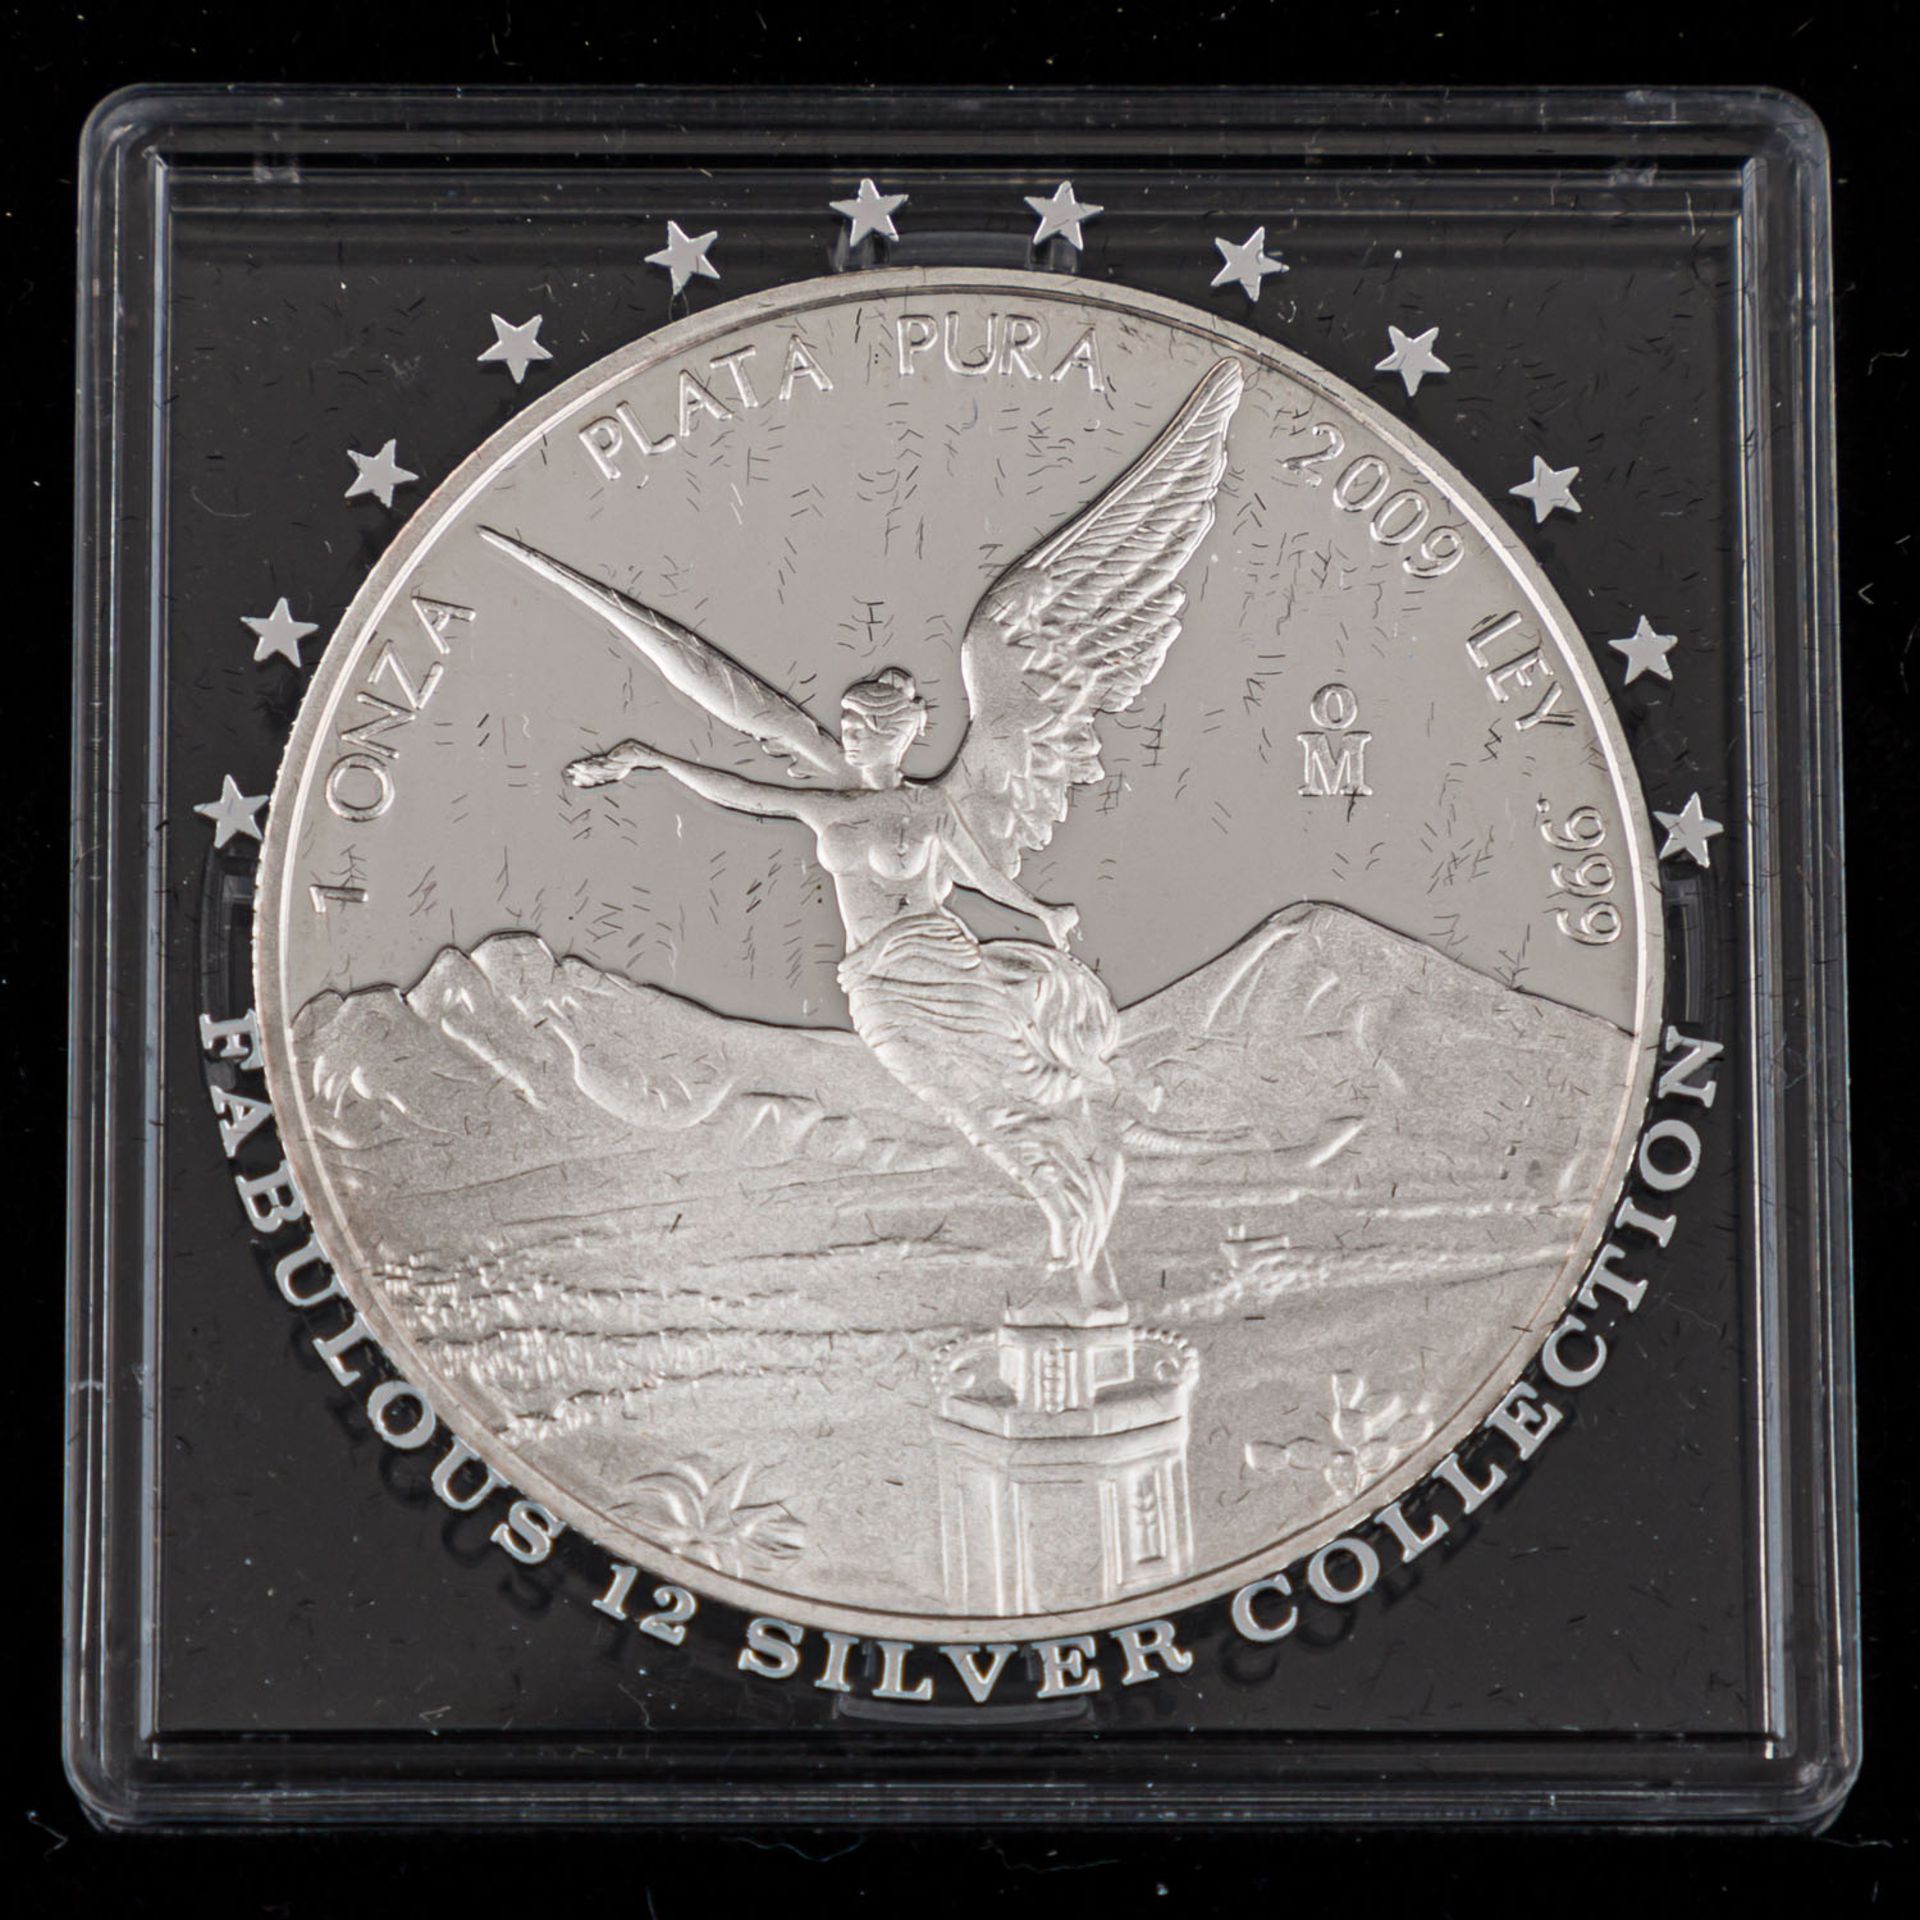 "The Fabulous 12 Silver Collection 2009" -schickes Silbermünzenset in edler Münzkassette. Erhalt - Bild 5 aus 8